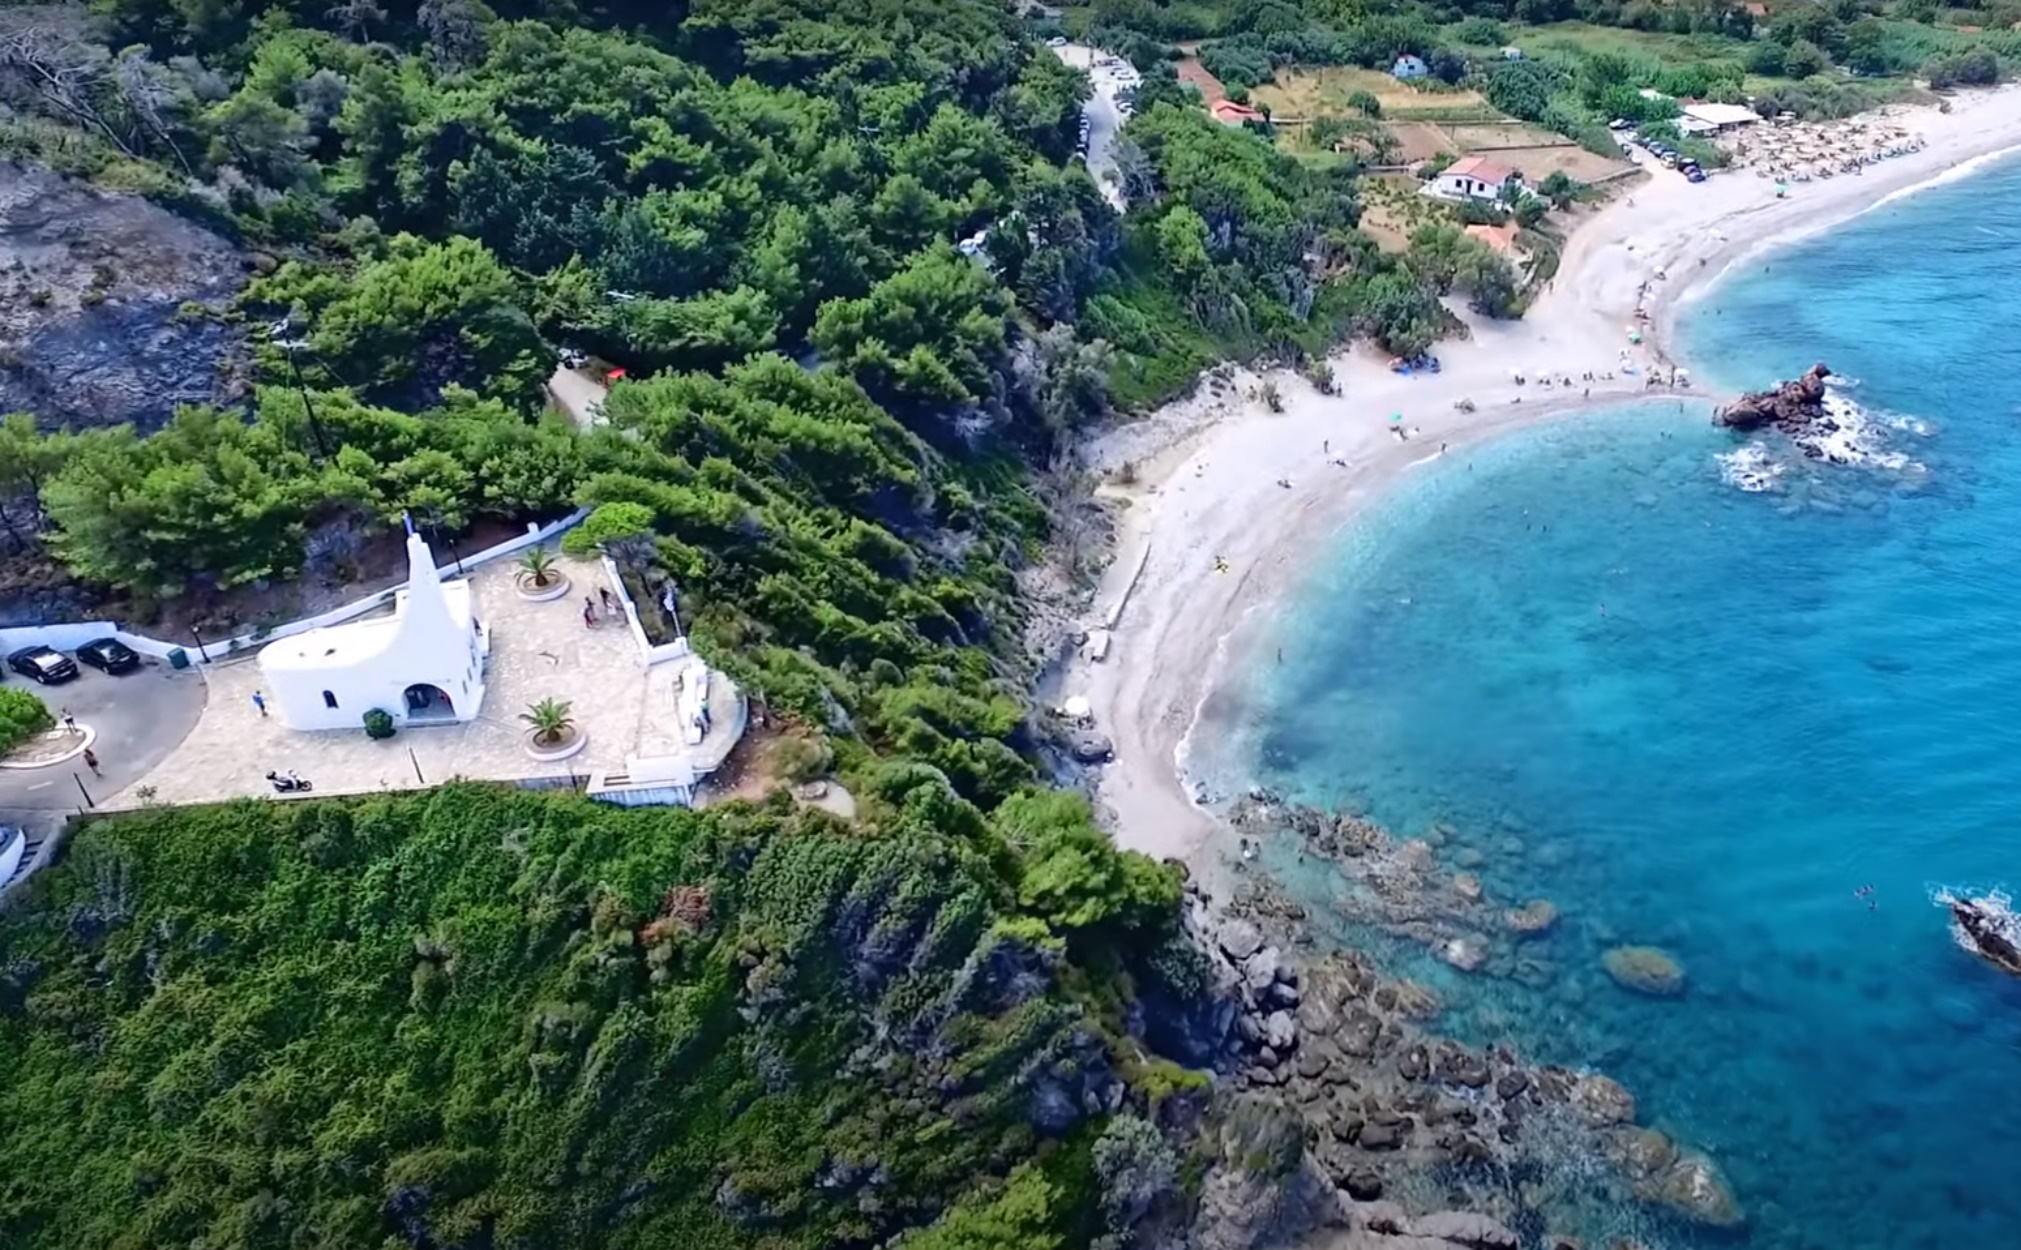 Η απίστευτη παραλία με φαράγγι και καταρράκτες στην άκρη της Ελλάδας